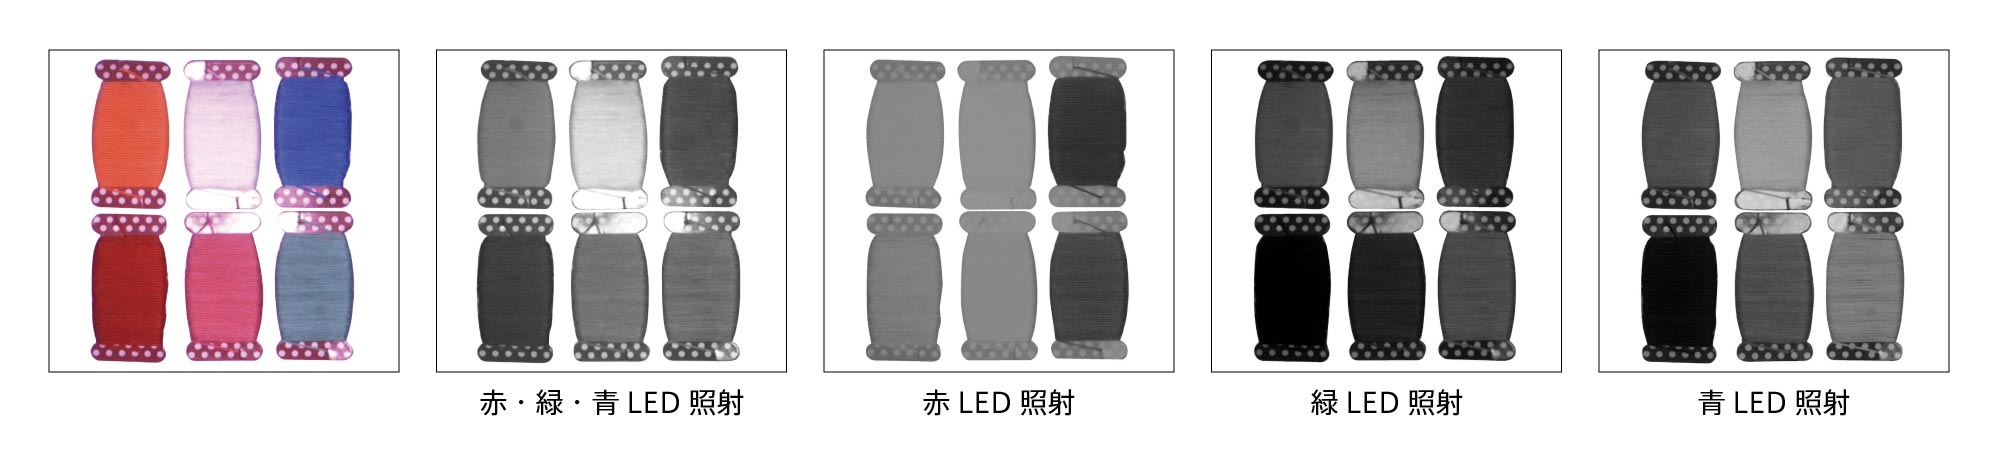 IDDA-KH-RGB Product Description 01